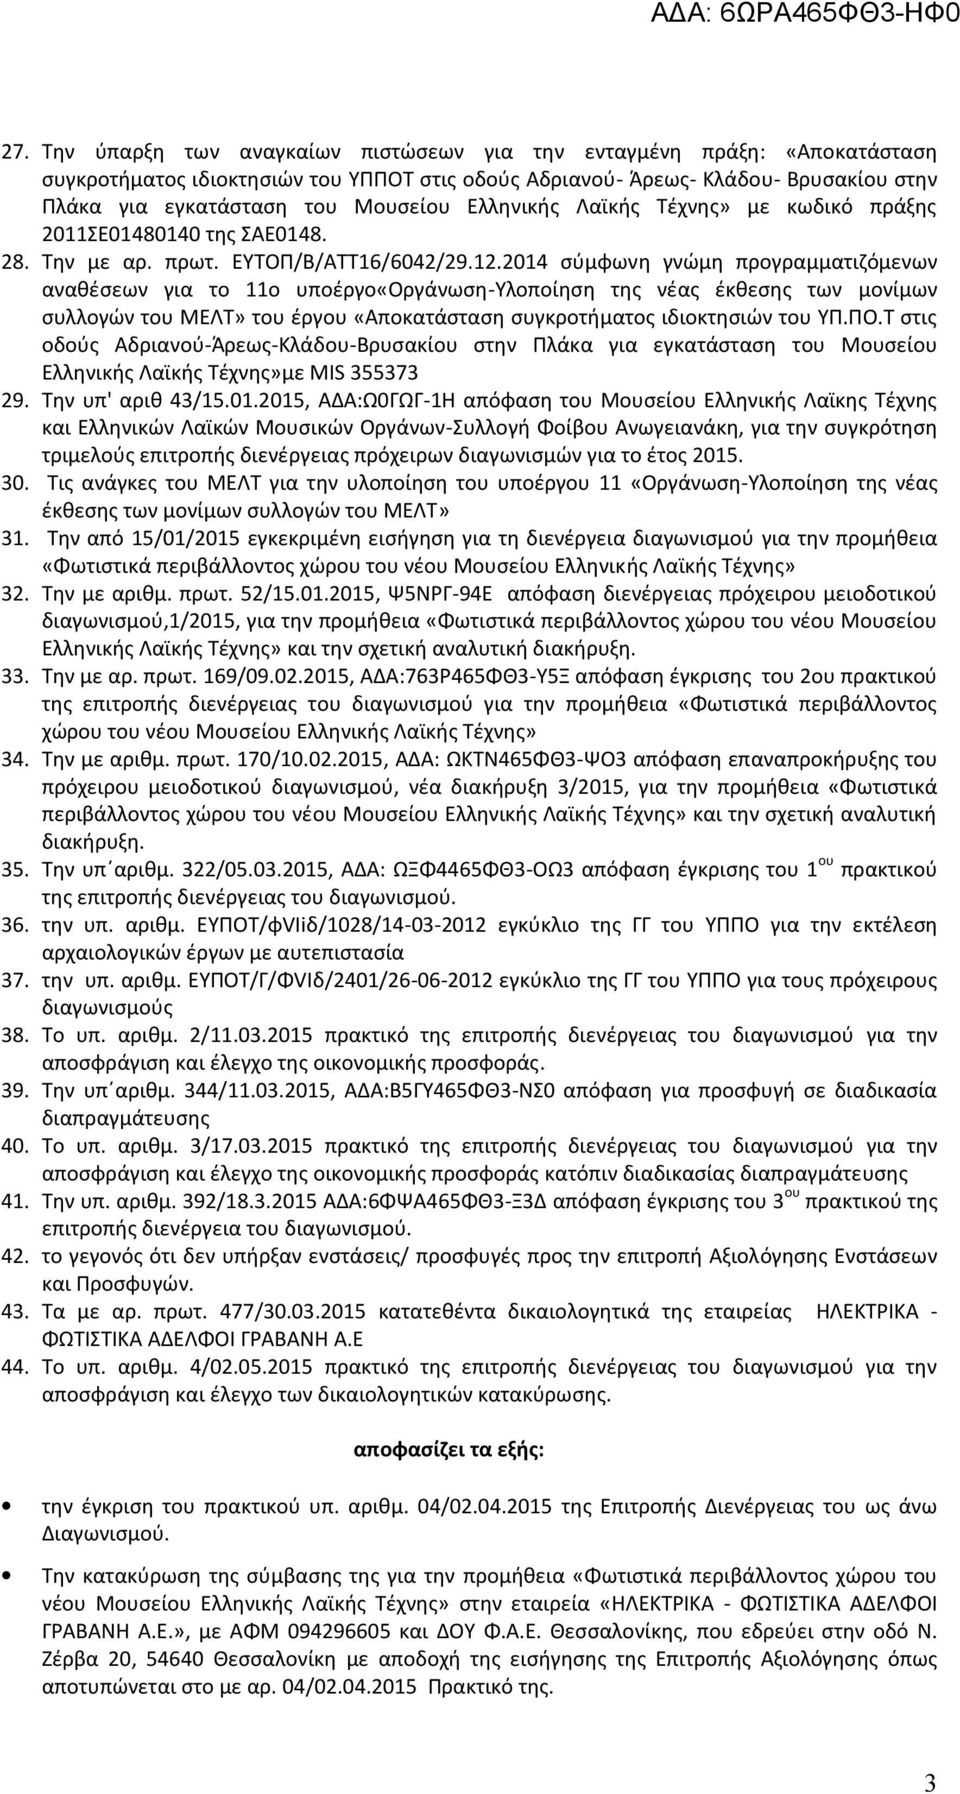 2014 σύμφωνη γνώμη προγραμματιζόμενων αναθέσεων για το 11ο υποέργο«οργάνωση-υλοποίηση της νέας έκθεσης των μονίμων συλλογών του ΜΕΛΤ» του έργου «Αποκατάσταση συγκροτήματος ιδιοκτησιών του ΥΠ.ΠΟ.